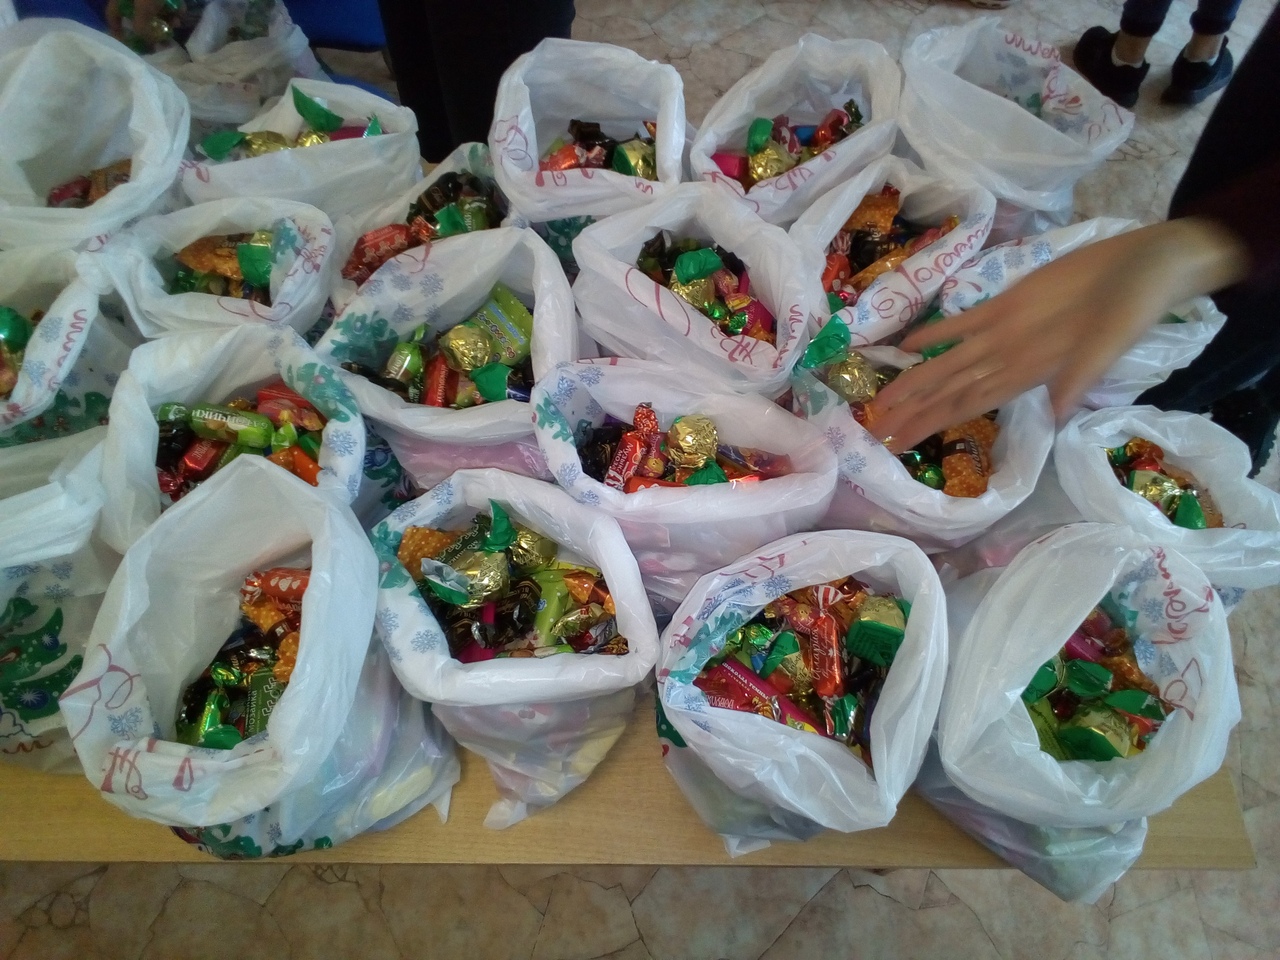 Студенты ВЭК приняли активное участие в приобретении и отправке новогодних подарков детям юго-восточных районов Донецкой и Луганской областей Украины